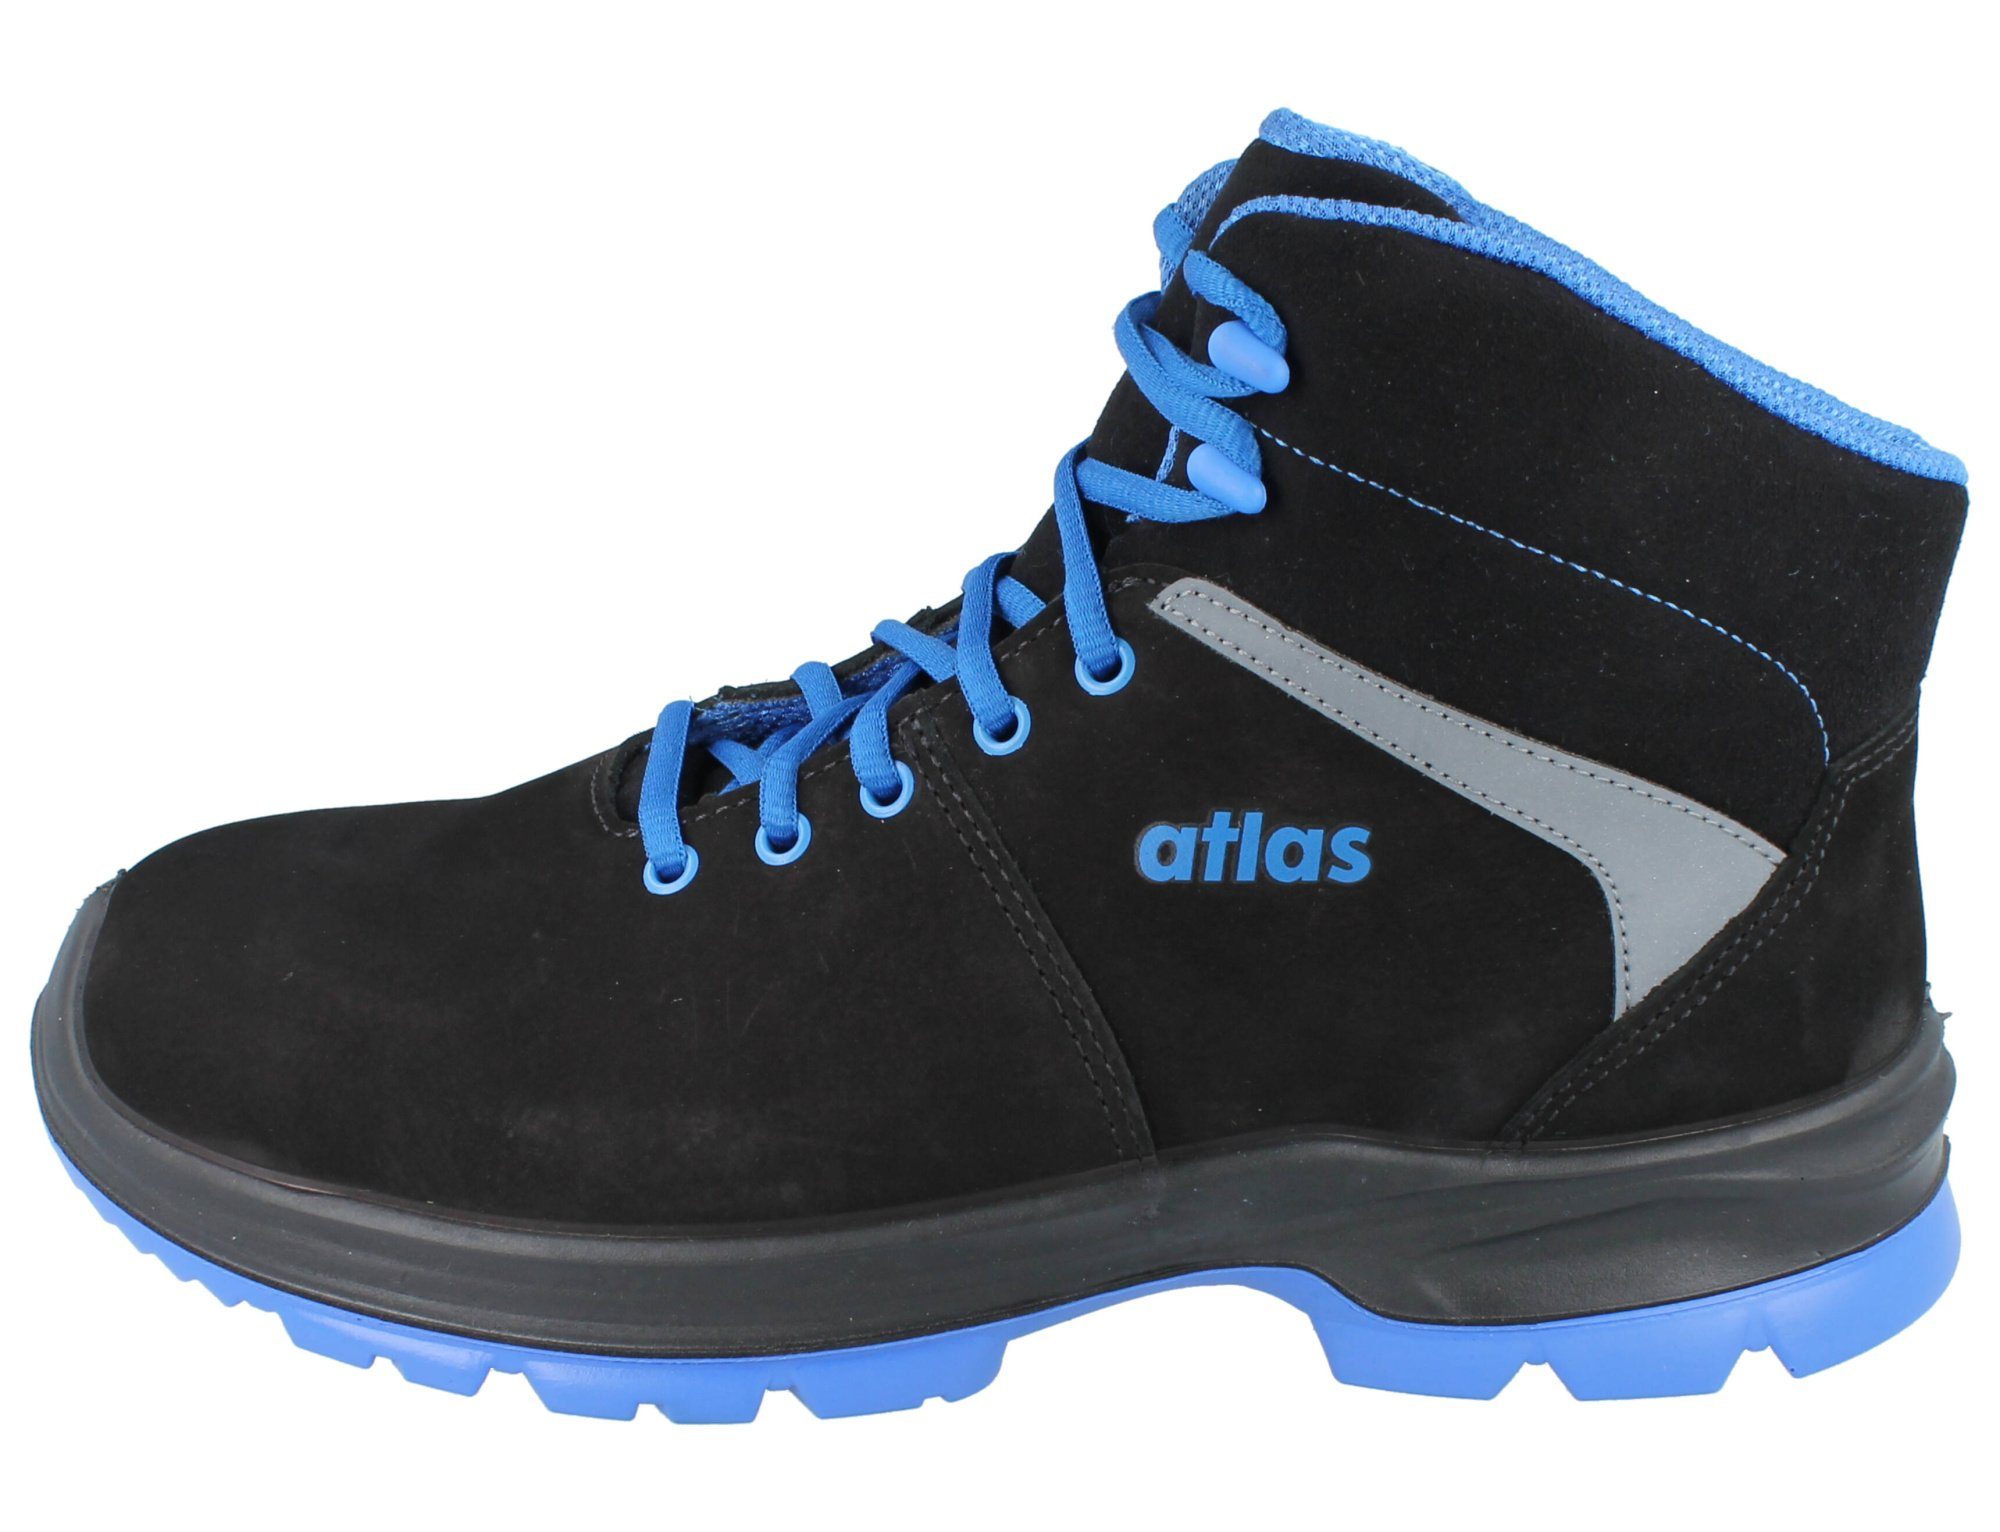 Atlas Schuhe 494 Sicherheitsschuh SL 2.0 805 Atlas XP blue Sicherheitsschuhe ESD S3, EN20345